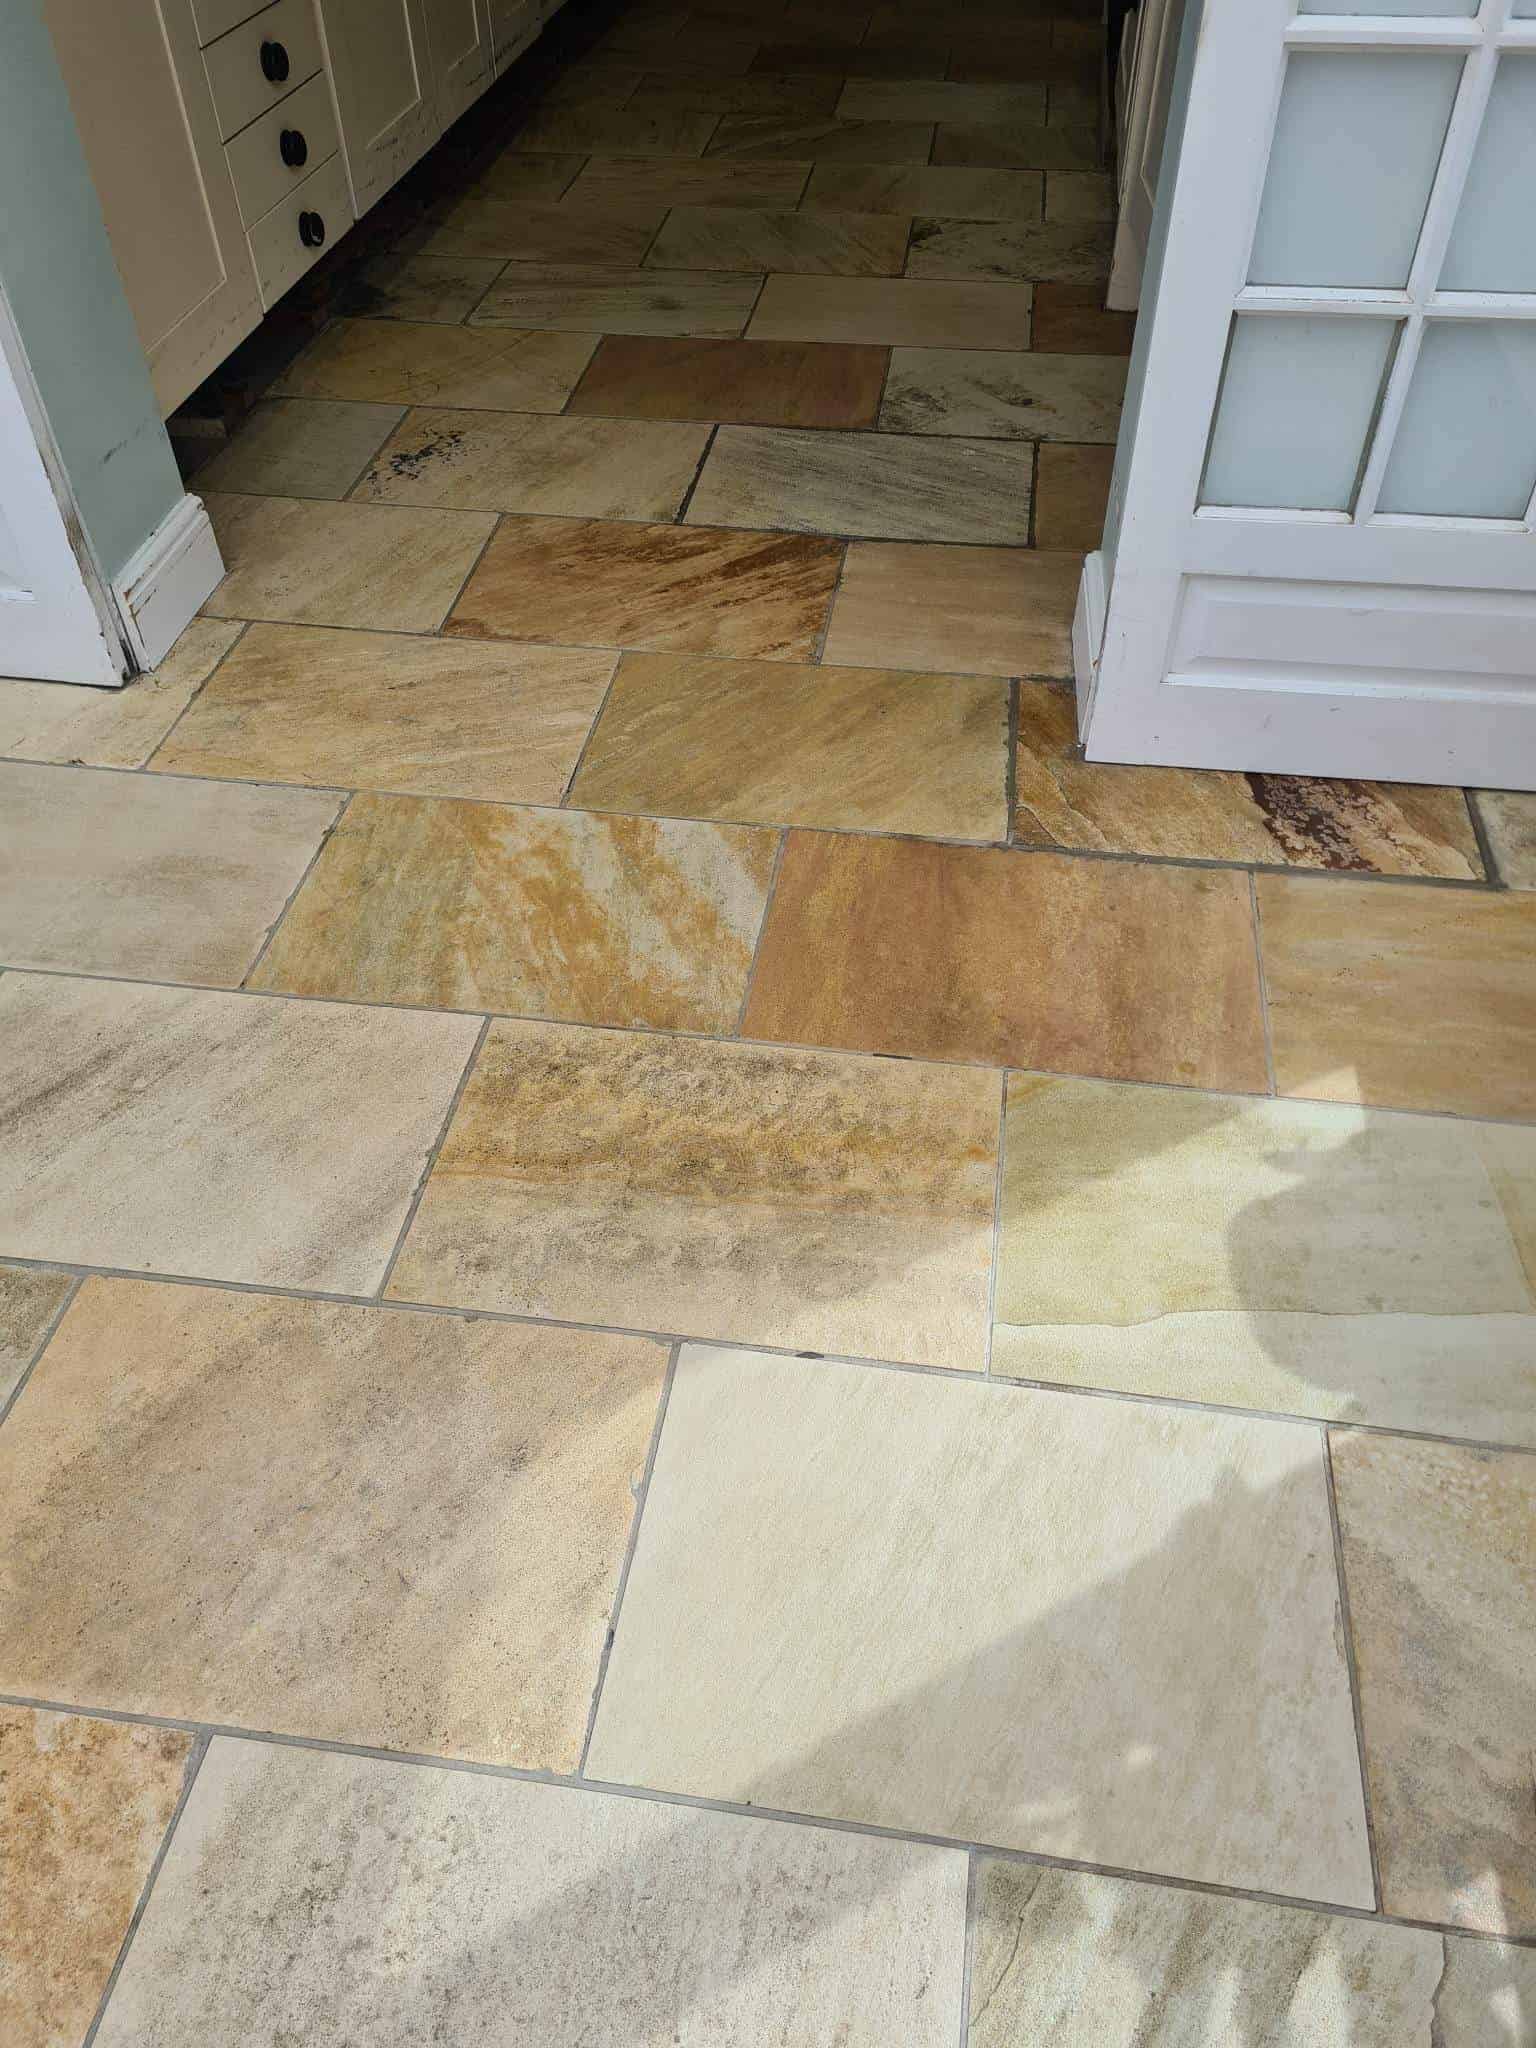 Sandstone Kitchen Floor After Cleaning Ipswich